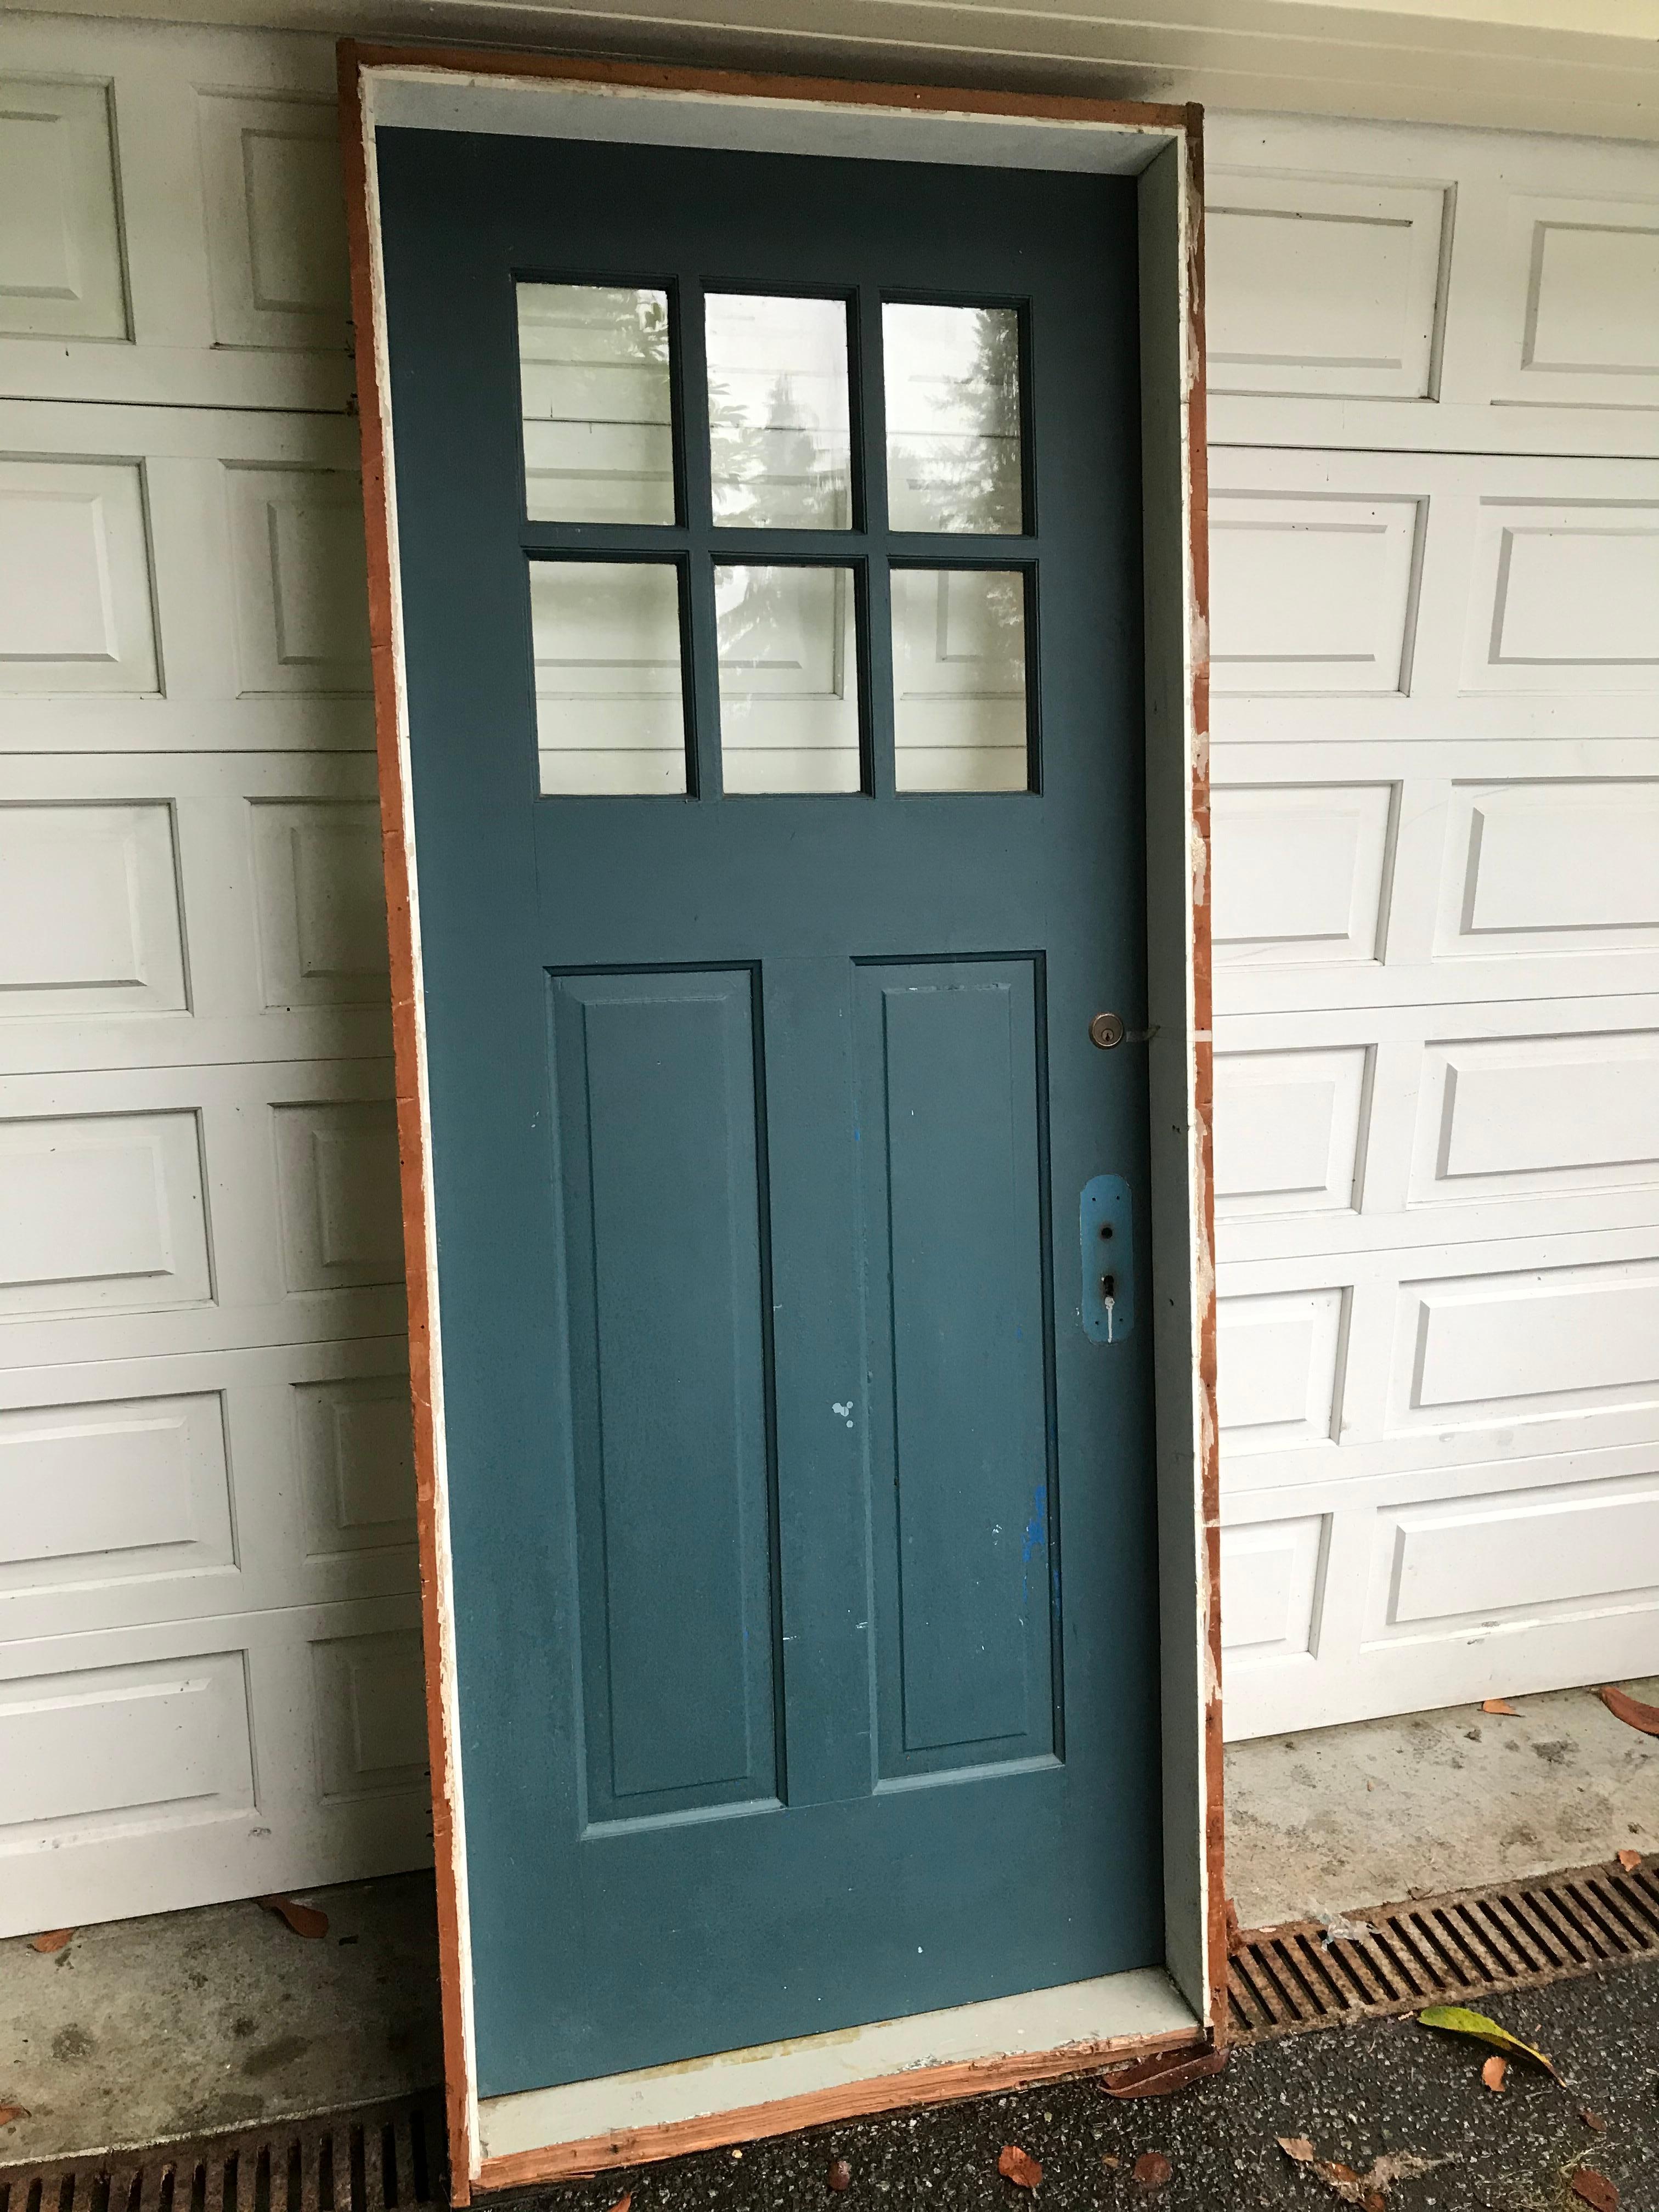 Schöne handgefertigte Arts & Crafts Tür mit Fenster im Rahmen. Diese stammt aus einem alten Craftsman-Bungalow aus einem örtlichen Anwesen. Die Beschläge könnten in den 1930er Jahren ersetzt worden sein, sind aber alt. Die Tür hat keine Holzfäule